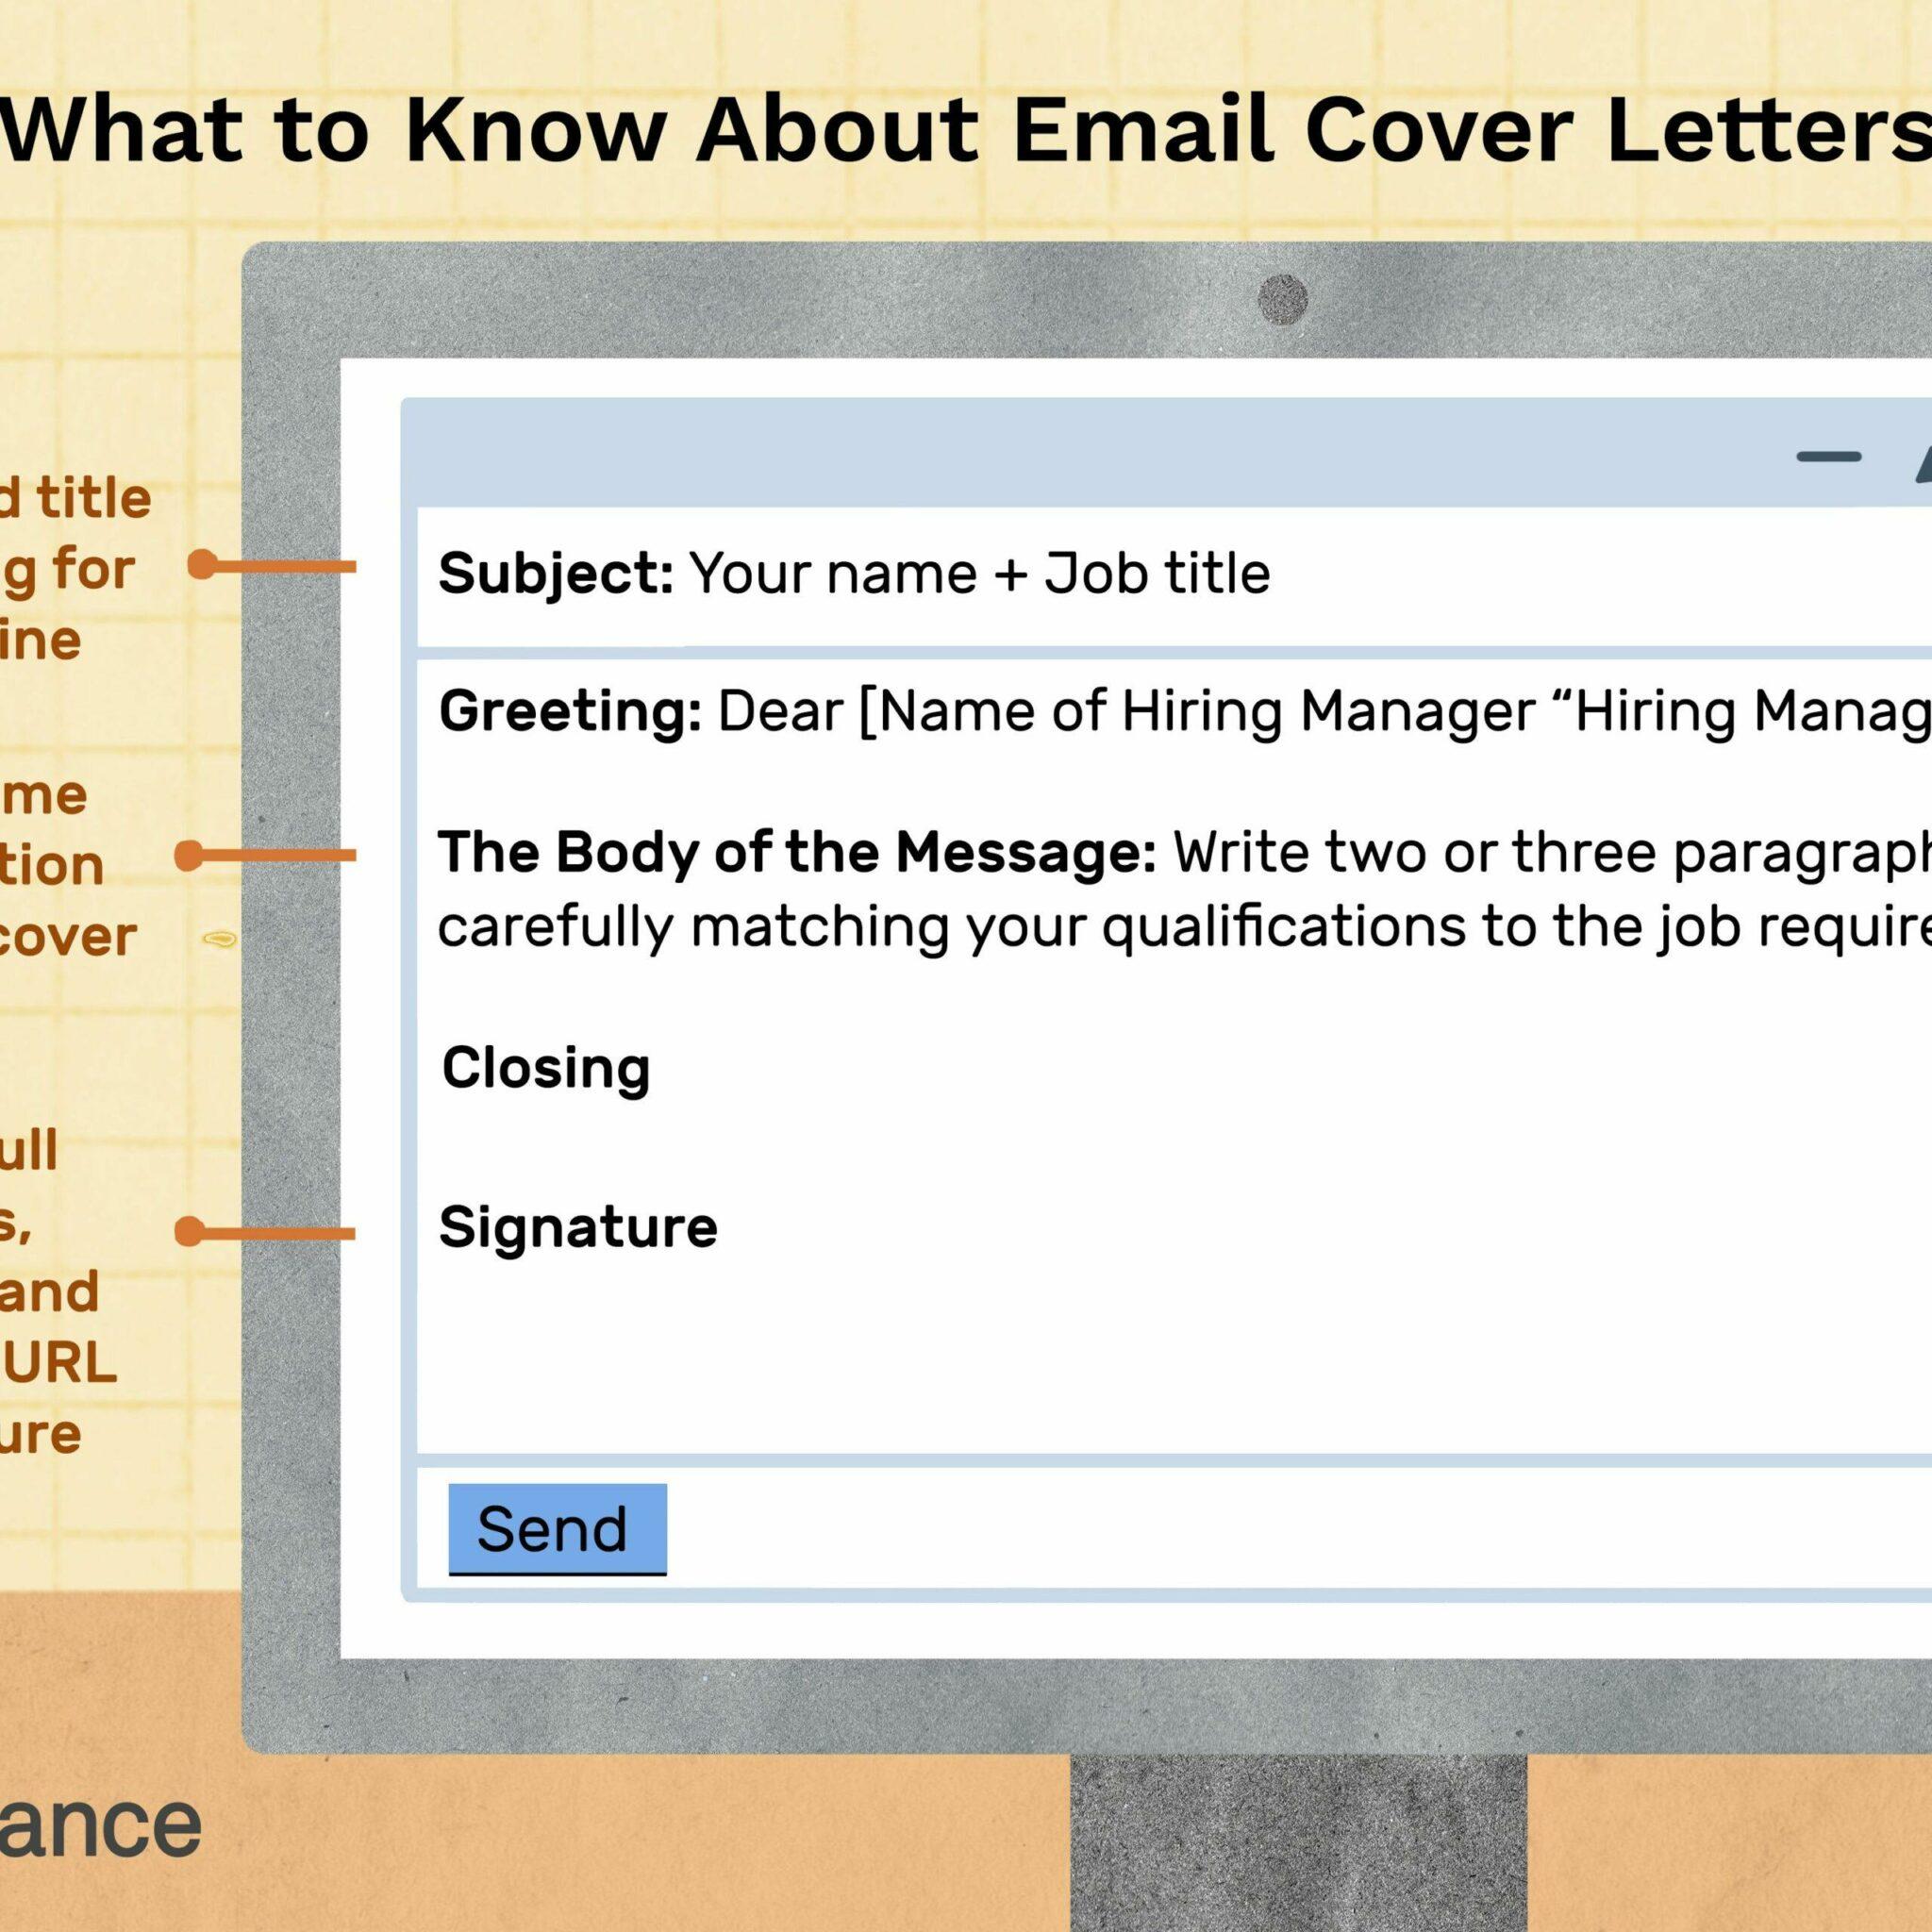 Cara Mengirim CV Lewat Email yang Baik dan Benar